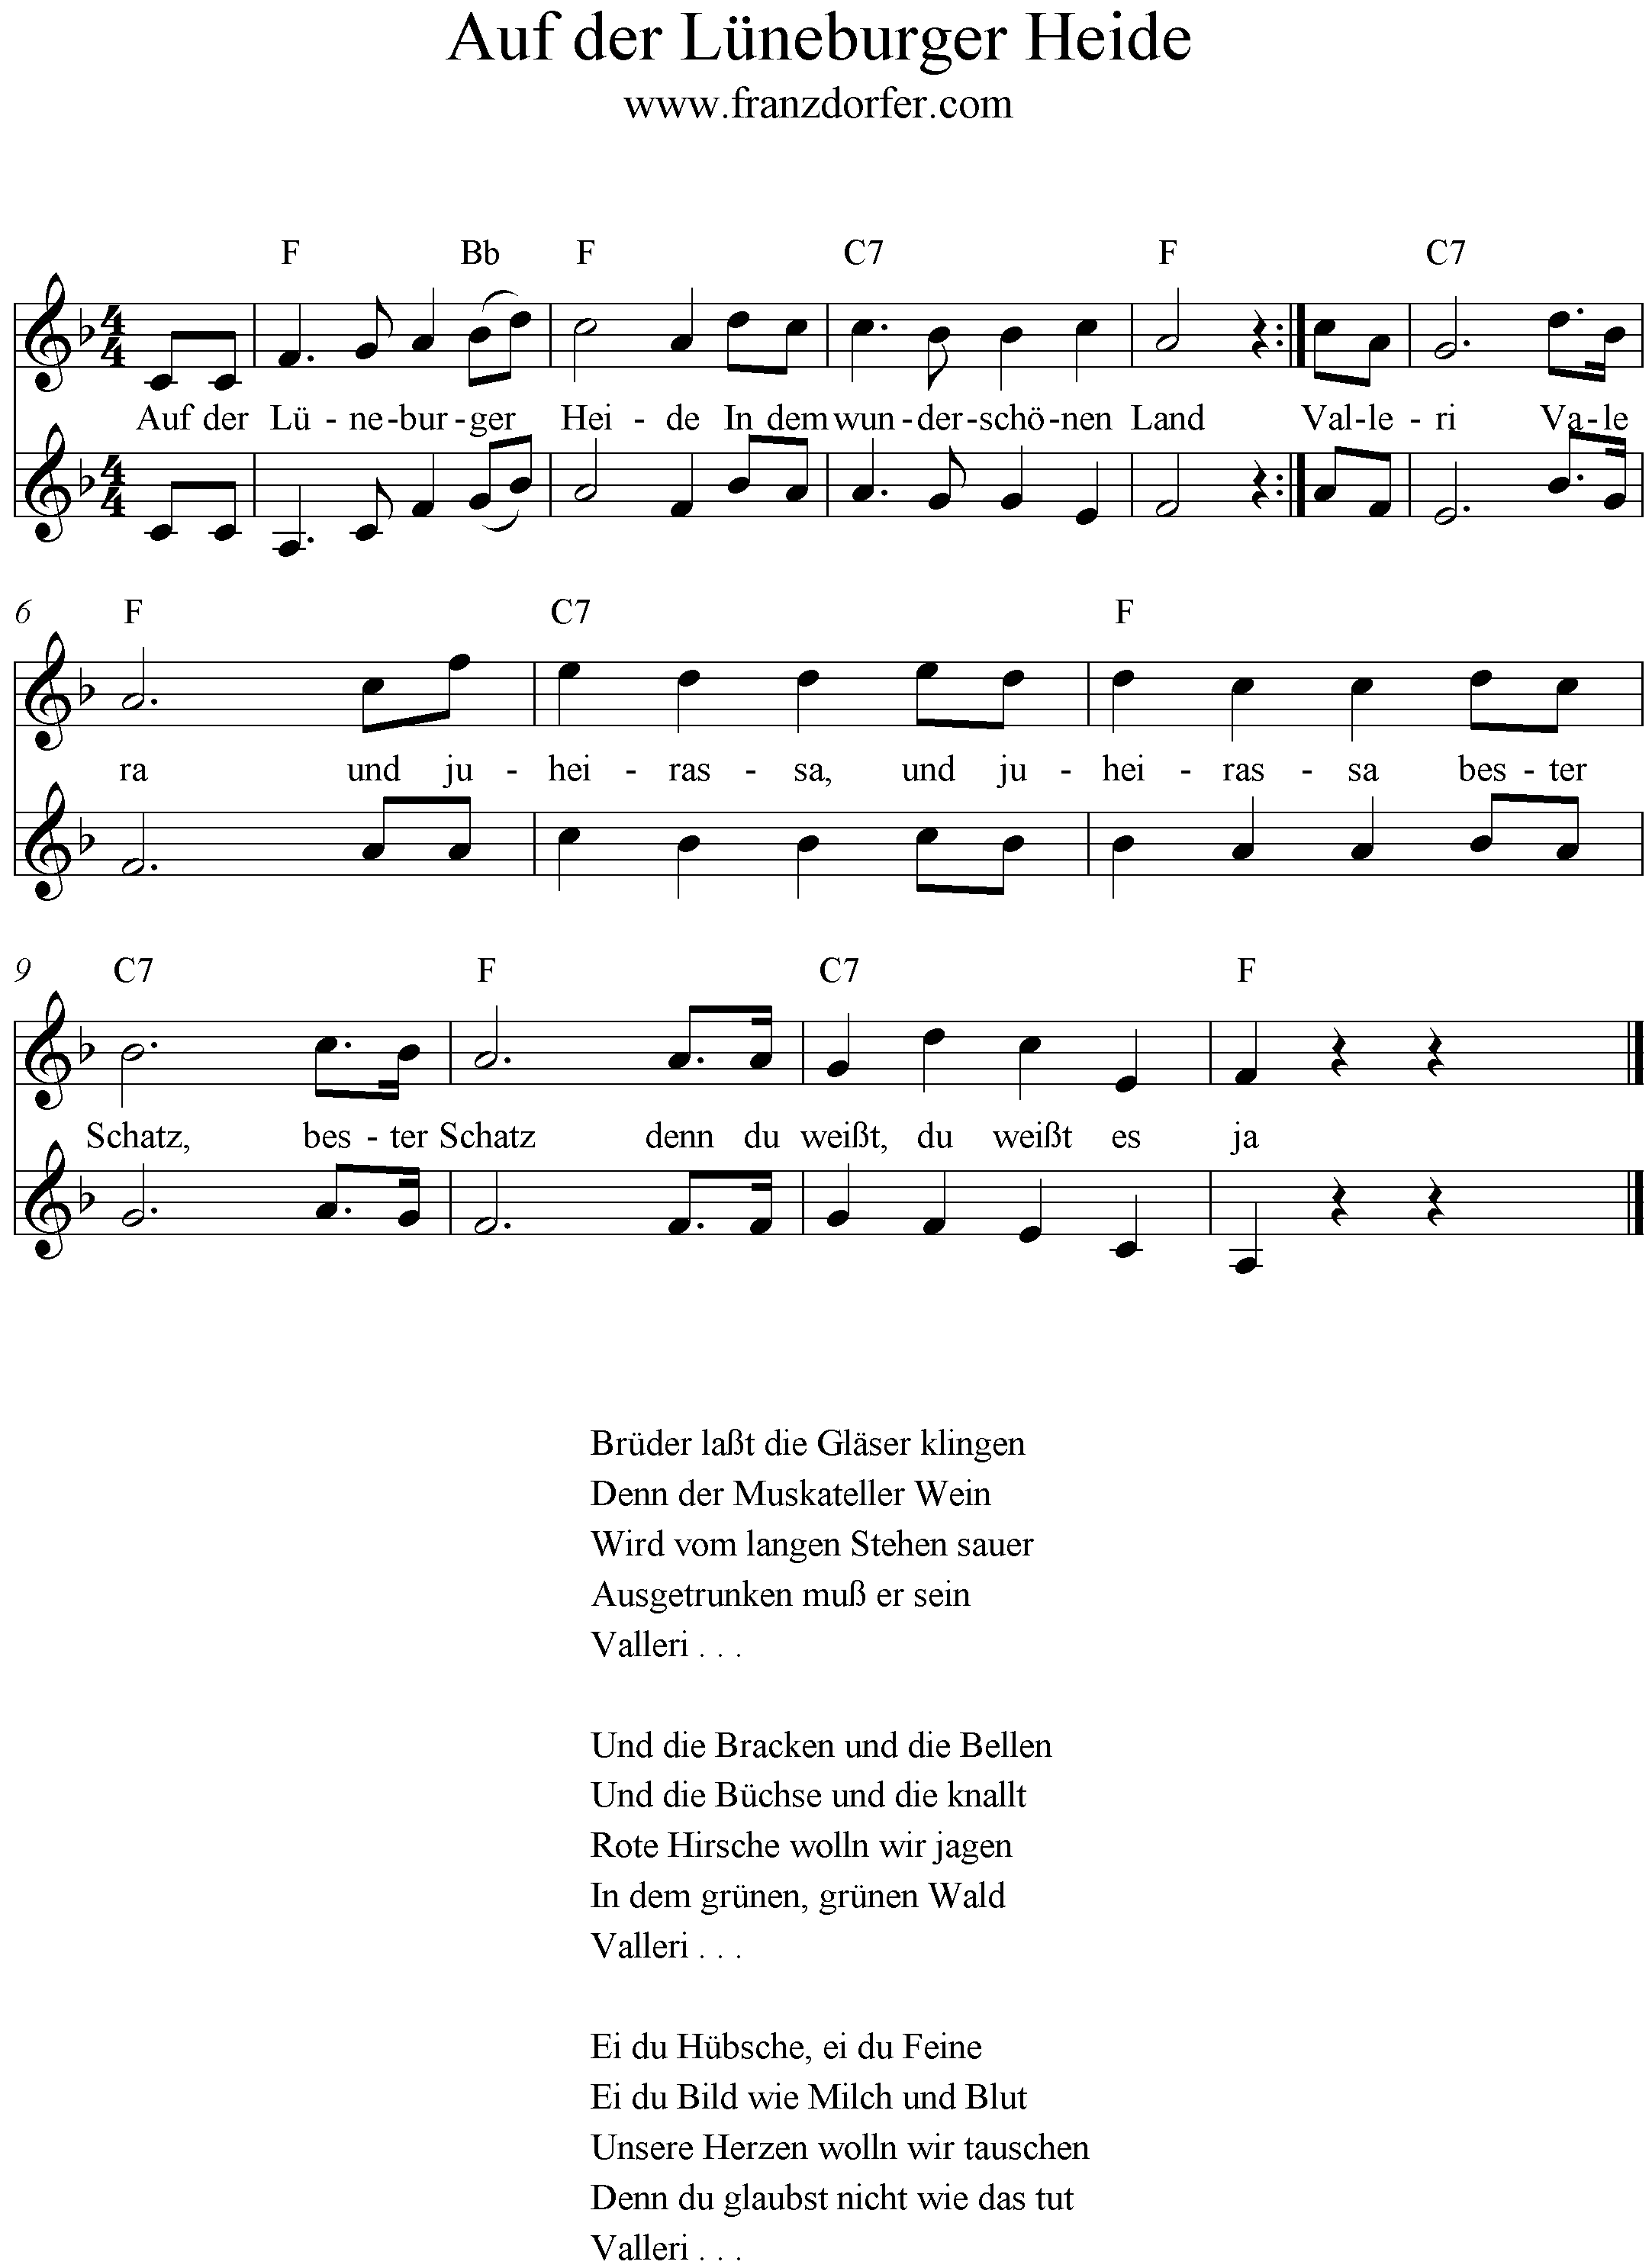 Text und noten märkische heide Songtext Brandenburg